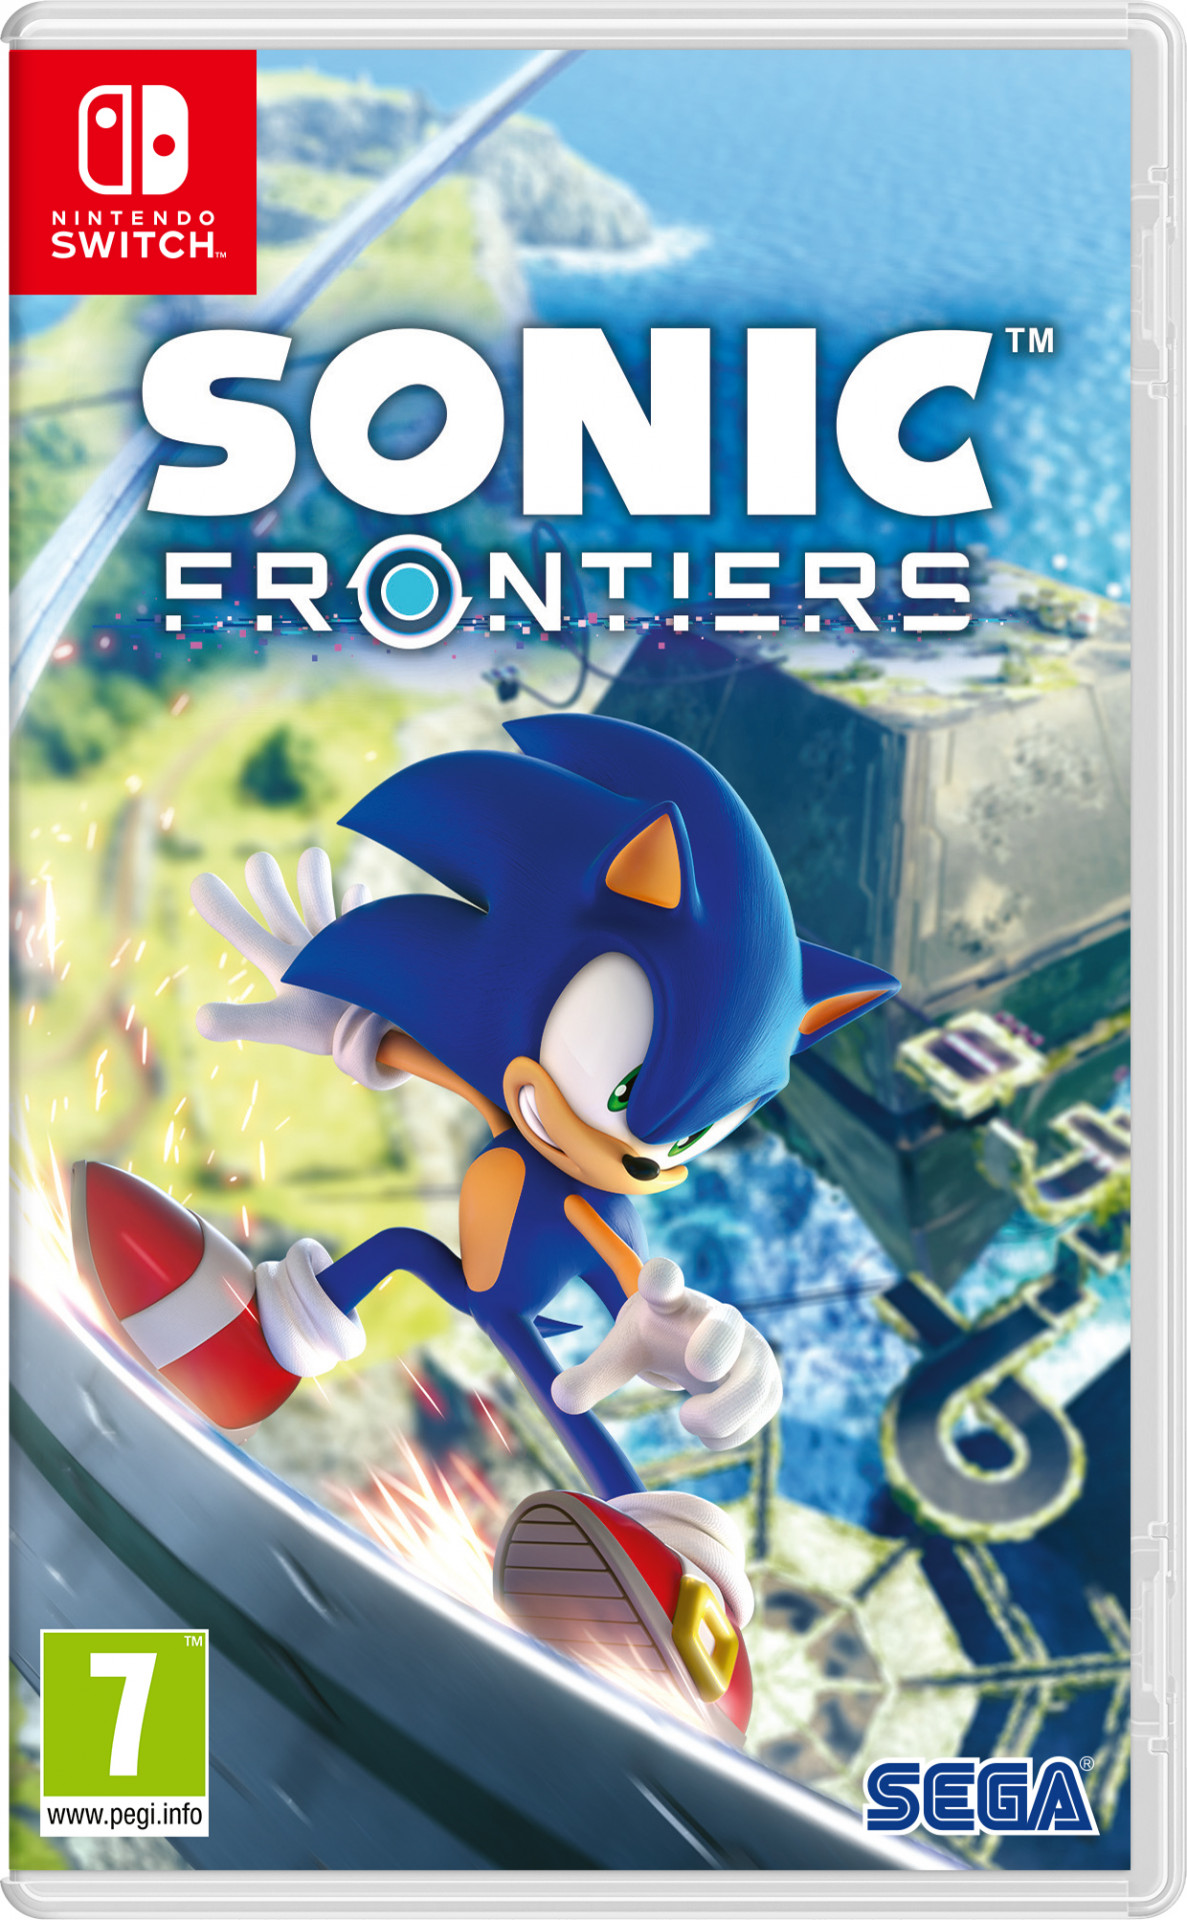 Rusland roestvrij Geweldig Nedgame gameshop: Sonic Frontiers (Nintendo Switch) kopen - aanbieding!